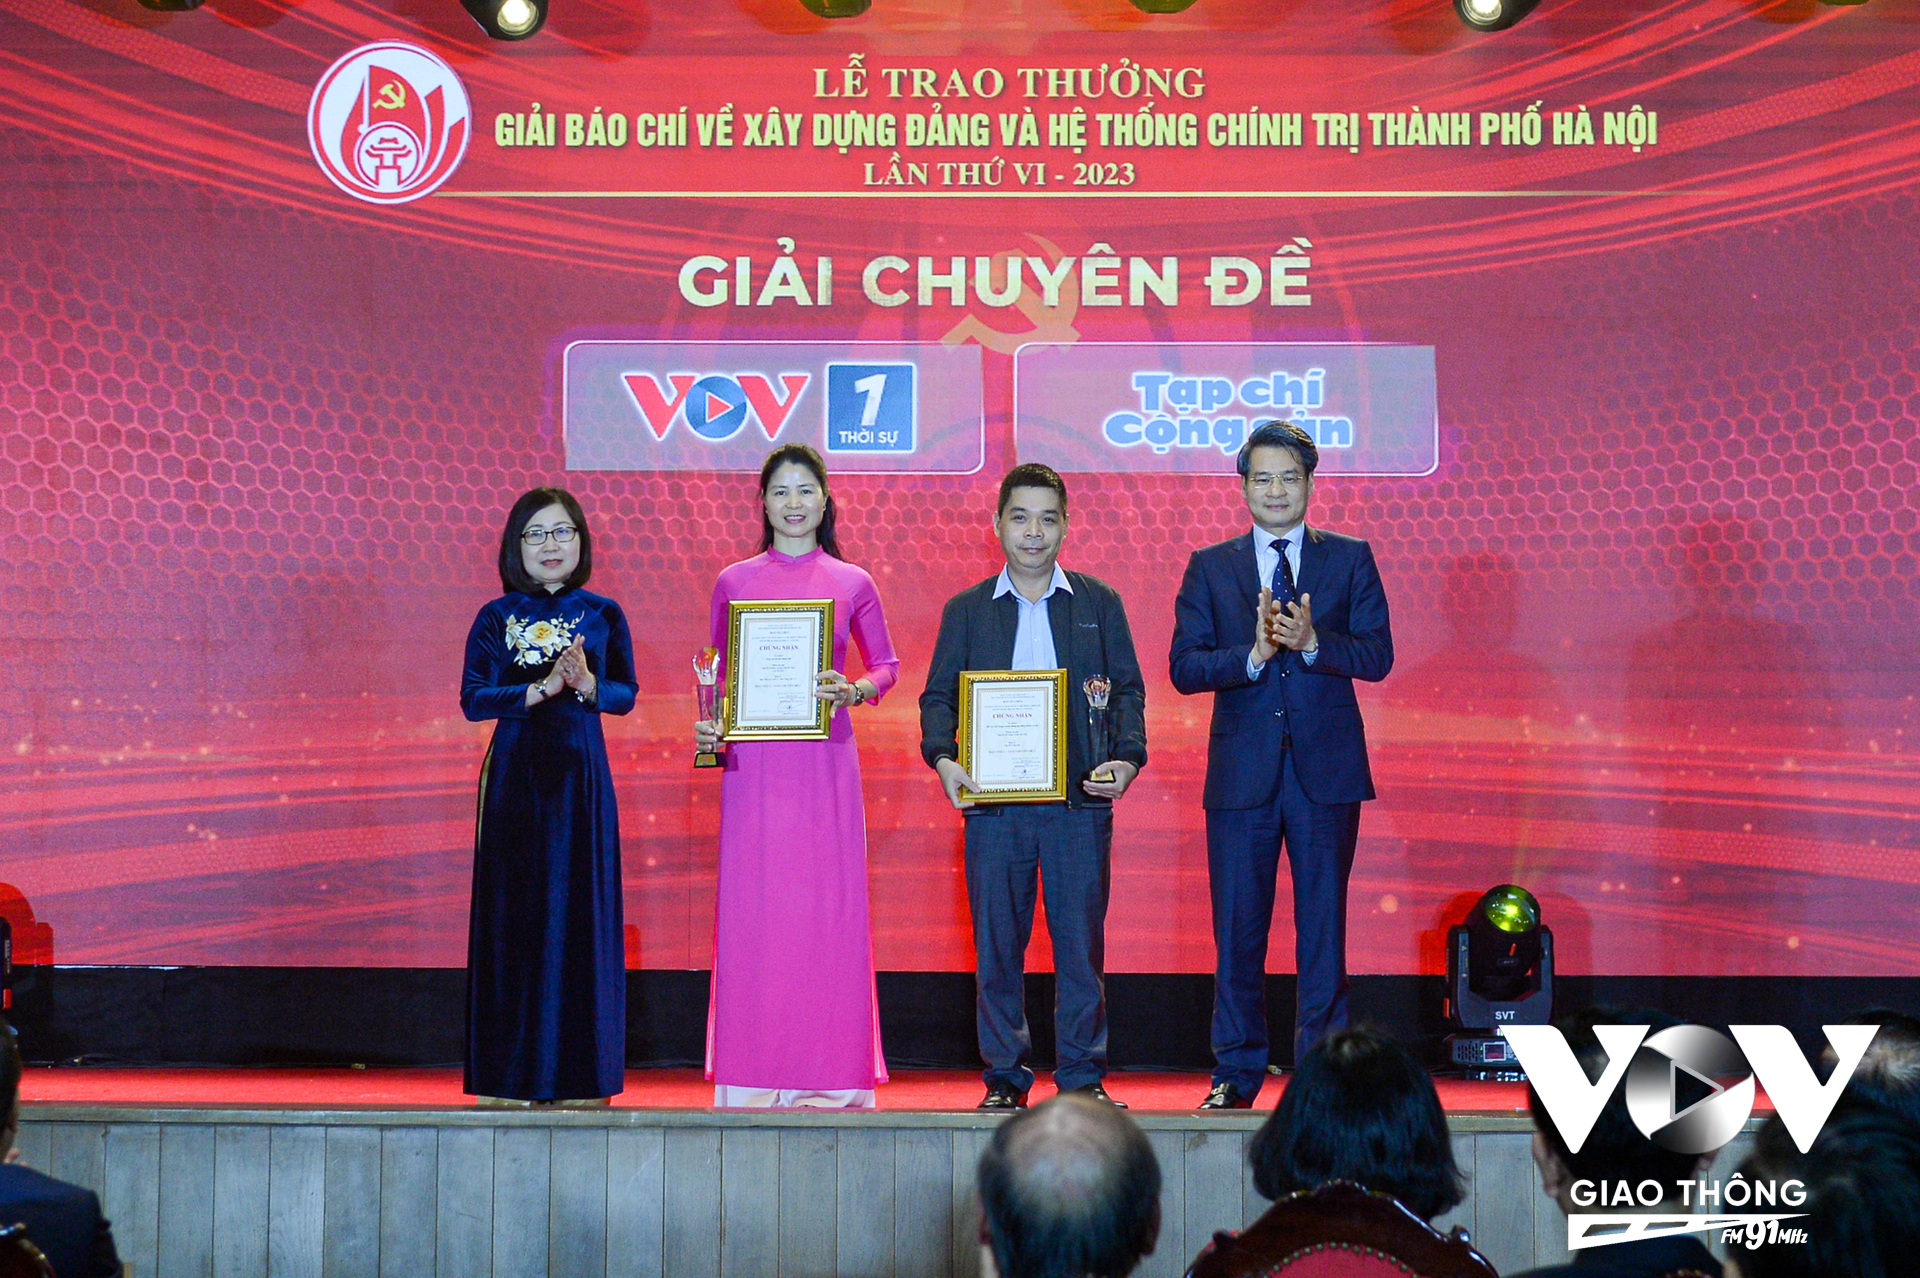 Tác phẩm' Trọn vẹn lời thề Đảng viên ' (của nhóm tác giả VOV1 Nguyễn Vũ Duy, Hoàng Thị Hà Nam, Lại Thị Hoa) đạt giải C chuyên đề với hạng mục phát thanh.